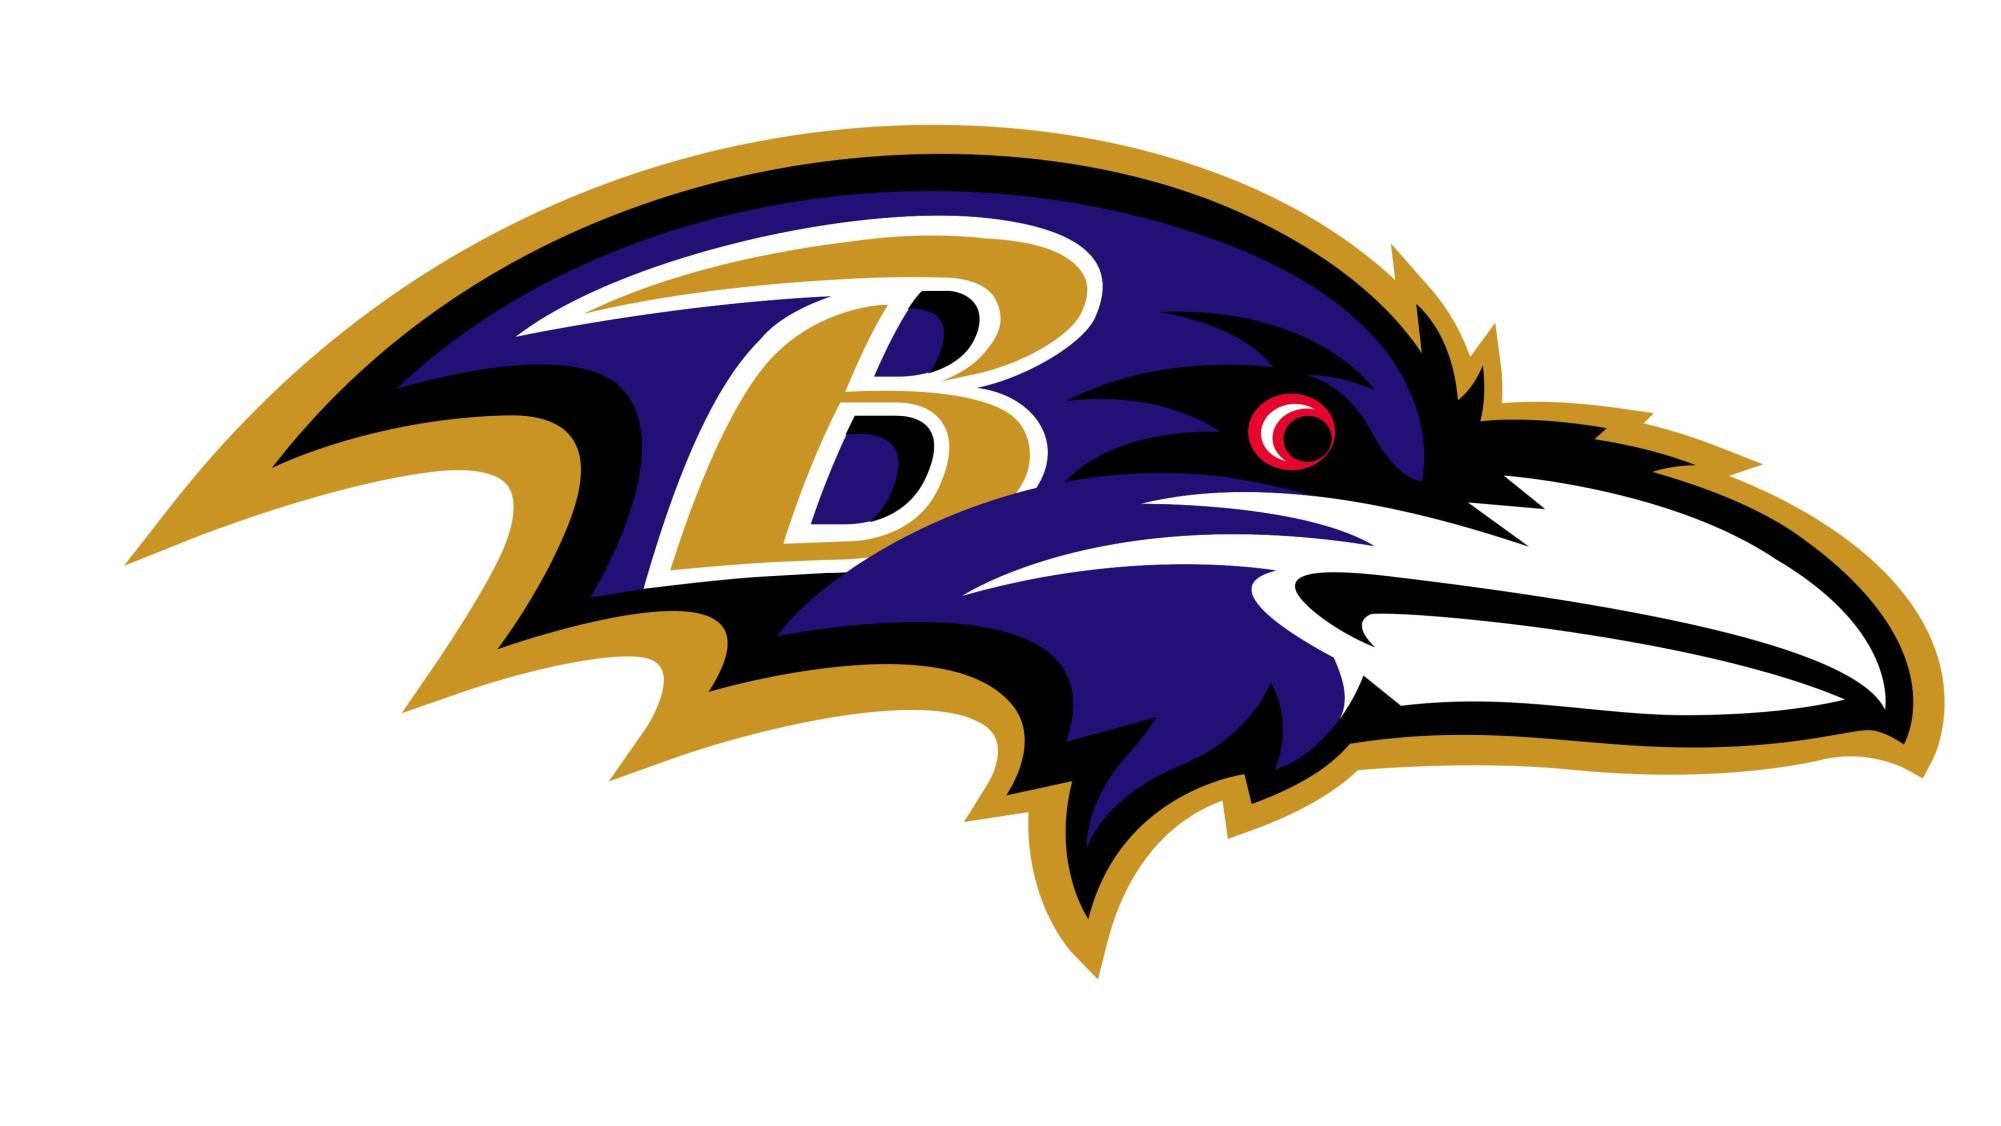 AFC #1 Seed: Baltimore Ravens